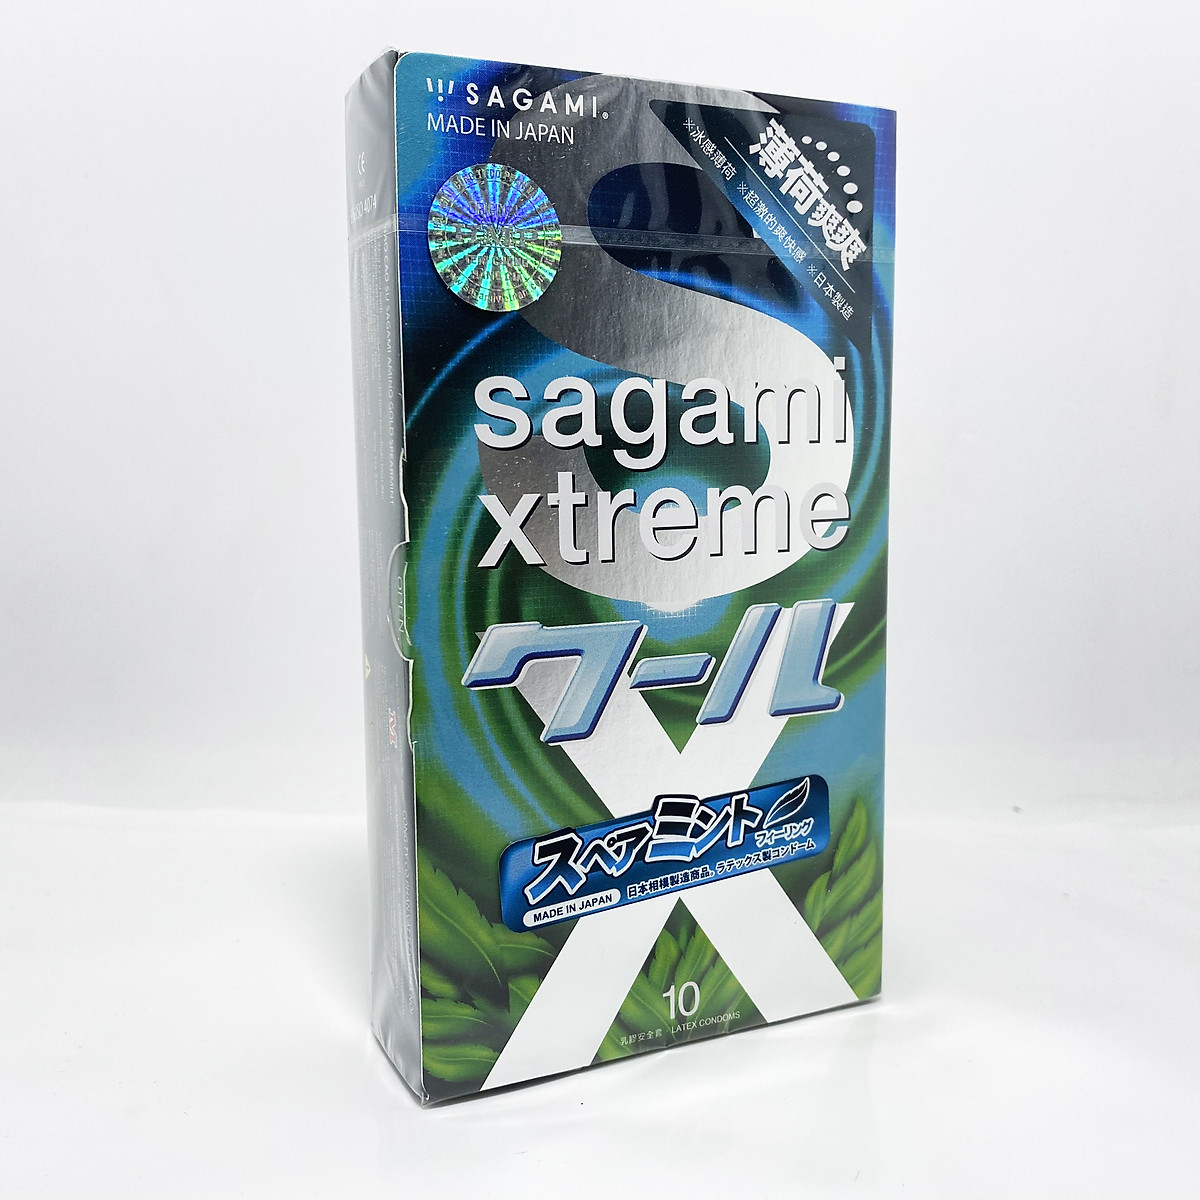 Bao Cao Su Nhật Bản Tạo Cảm Giác Mát Lạnh Sagami Xtreme Spearmint (Hộp 10 Chiếc) - Hương Thơm Bạc Hà - Che Tên Sản Phẩm